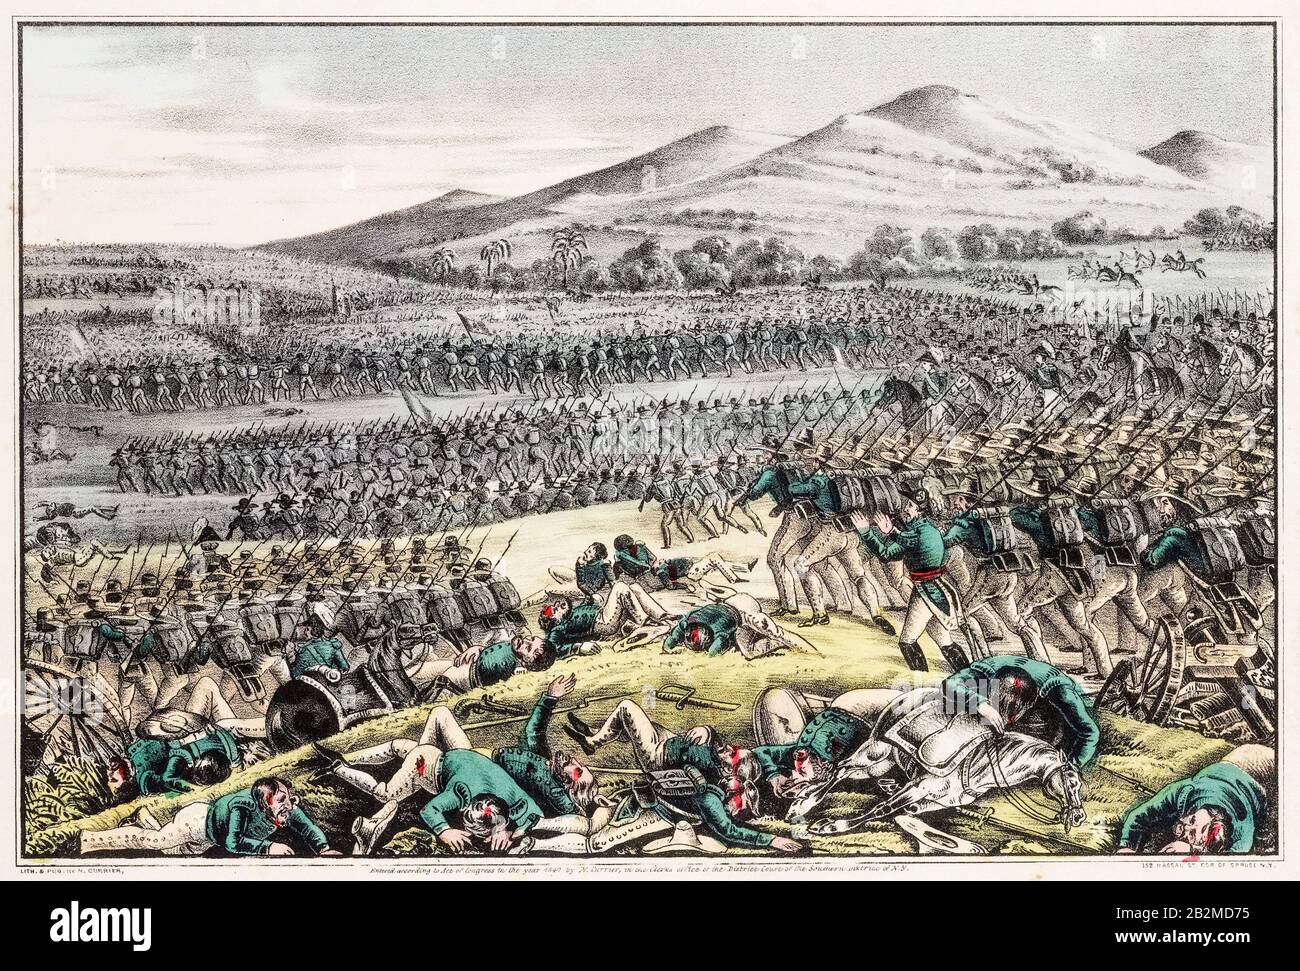 Vol de l'armée mexicaine, Bataille de Buena Vista, 23 février 1847, (Bataille d'Angostura), guerre Mexico-américaine (1846-1848), imprimé, 1847 Banque D'Images